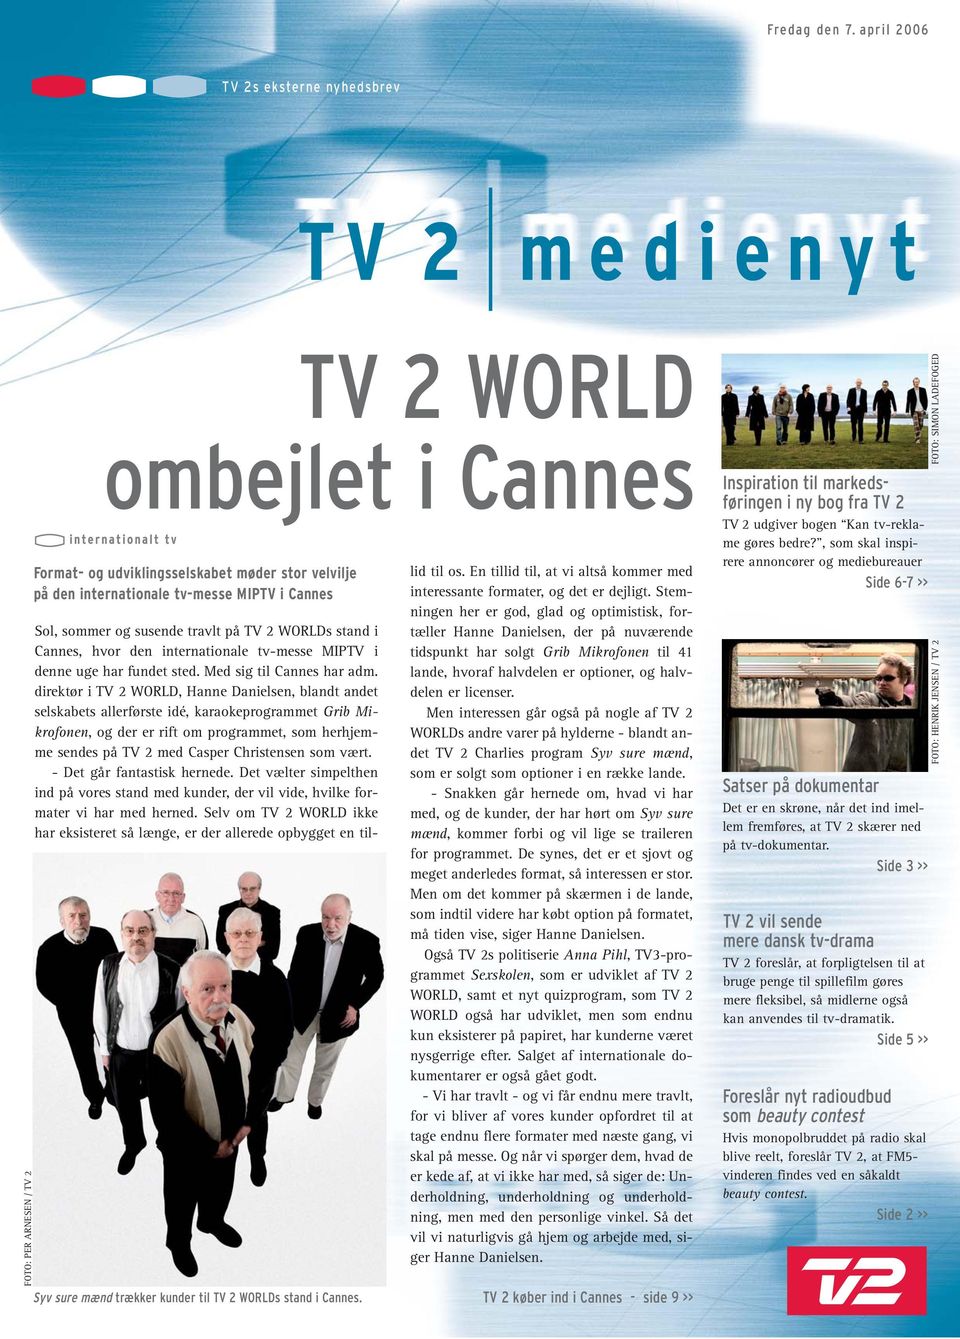 og susende travlt på TV 2 WORLDs stand i Cannes, hvor den internationale tv-messe MIPTV i denne uge har fundet sted. Med sig til Cannes har adm.